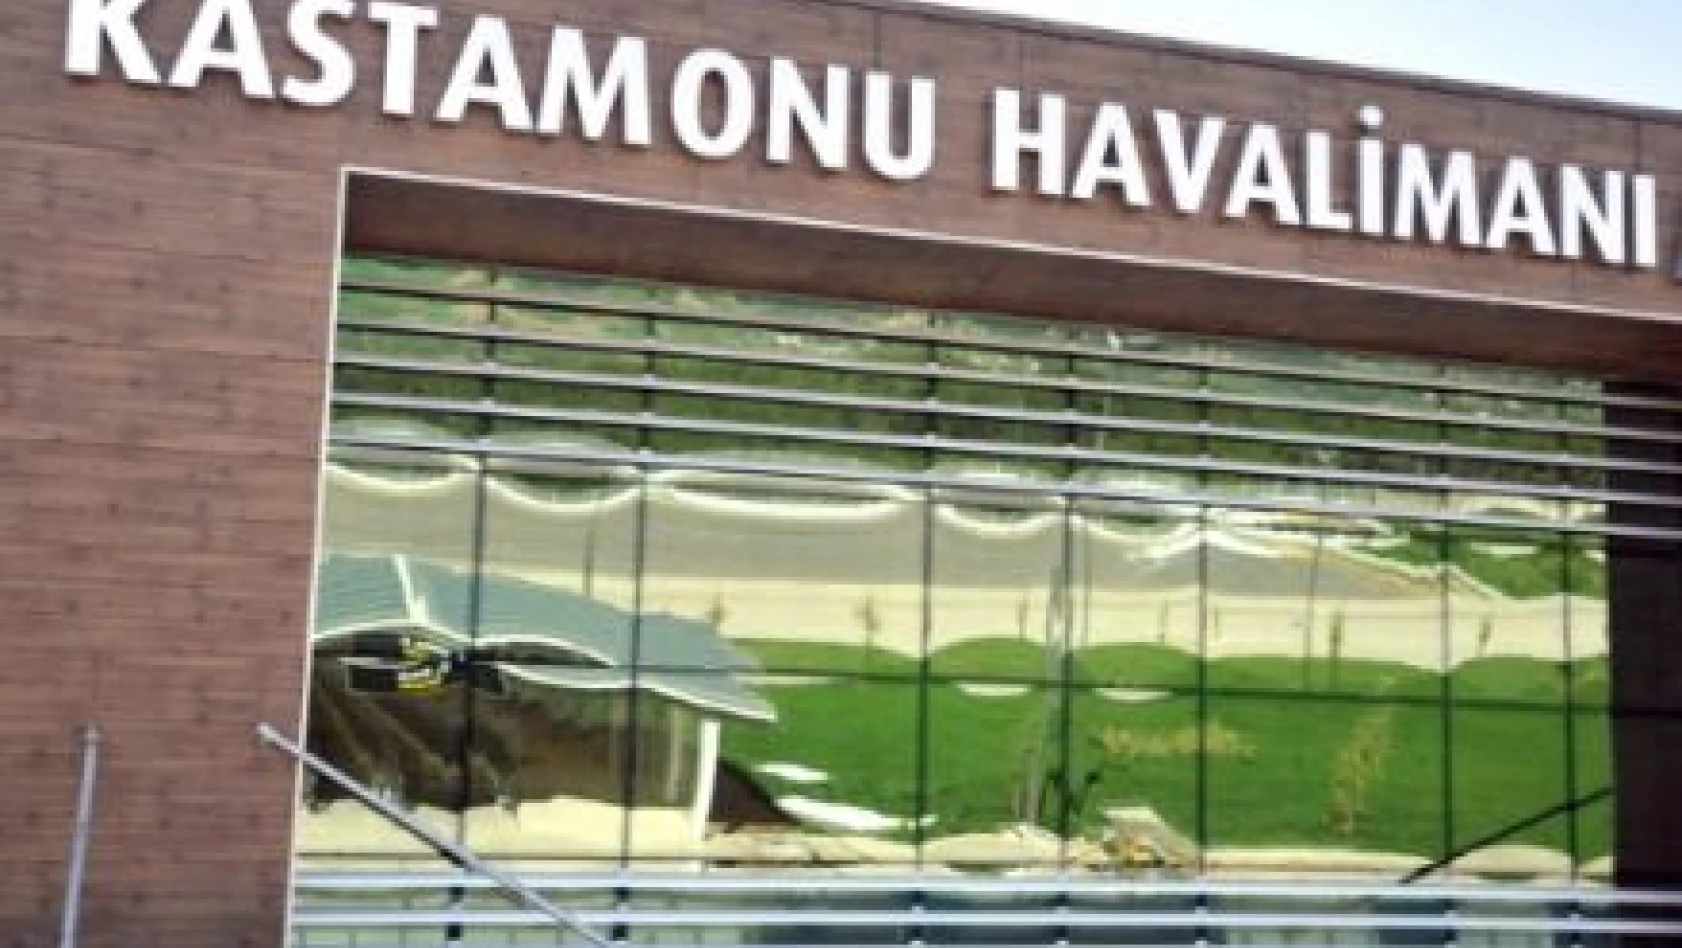 Kastamonu Havalimanı 17 Haziran'da uçuşa hazır